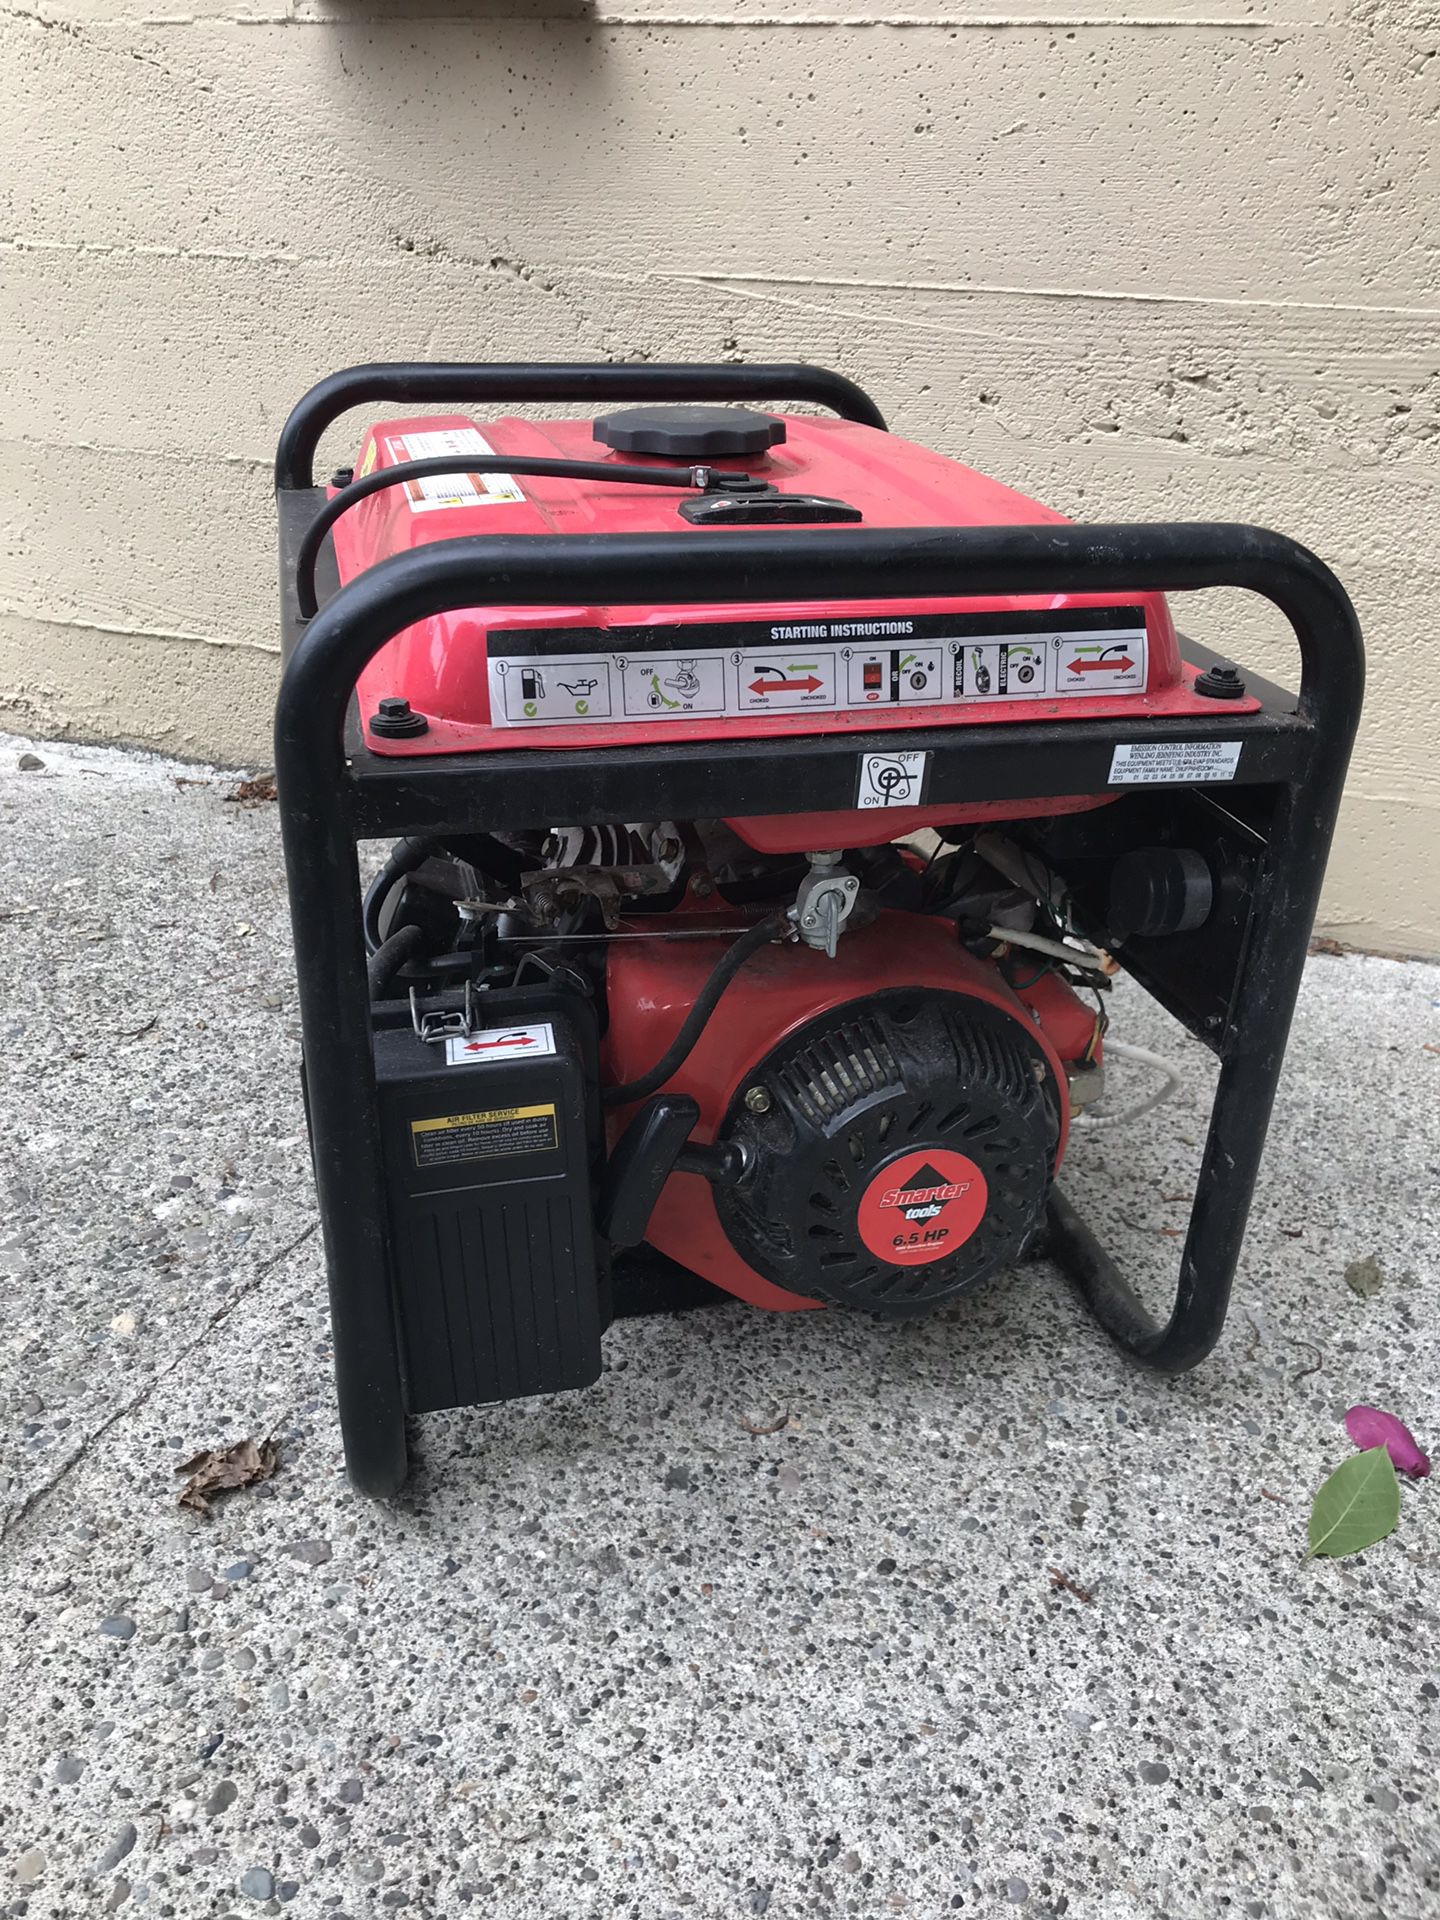 3500 watt generator “Smart Tool” $200